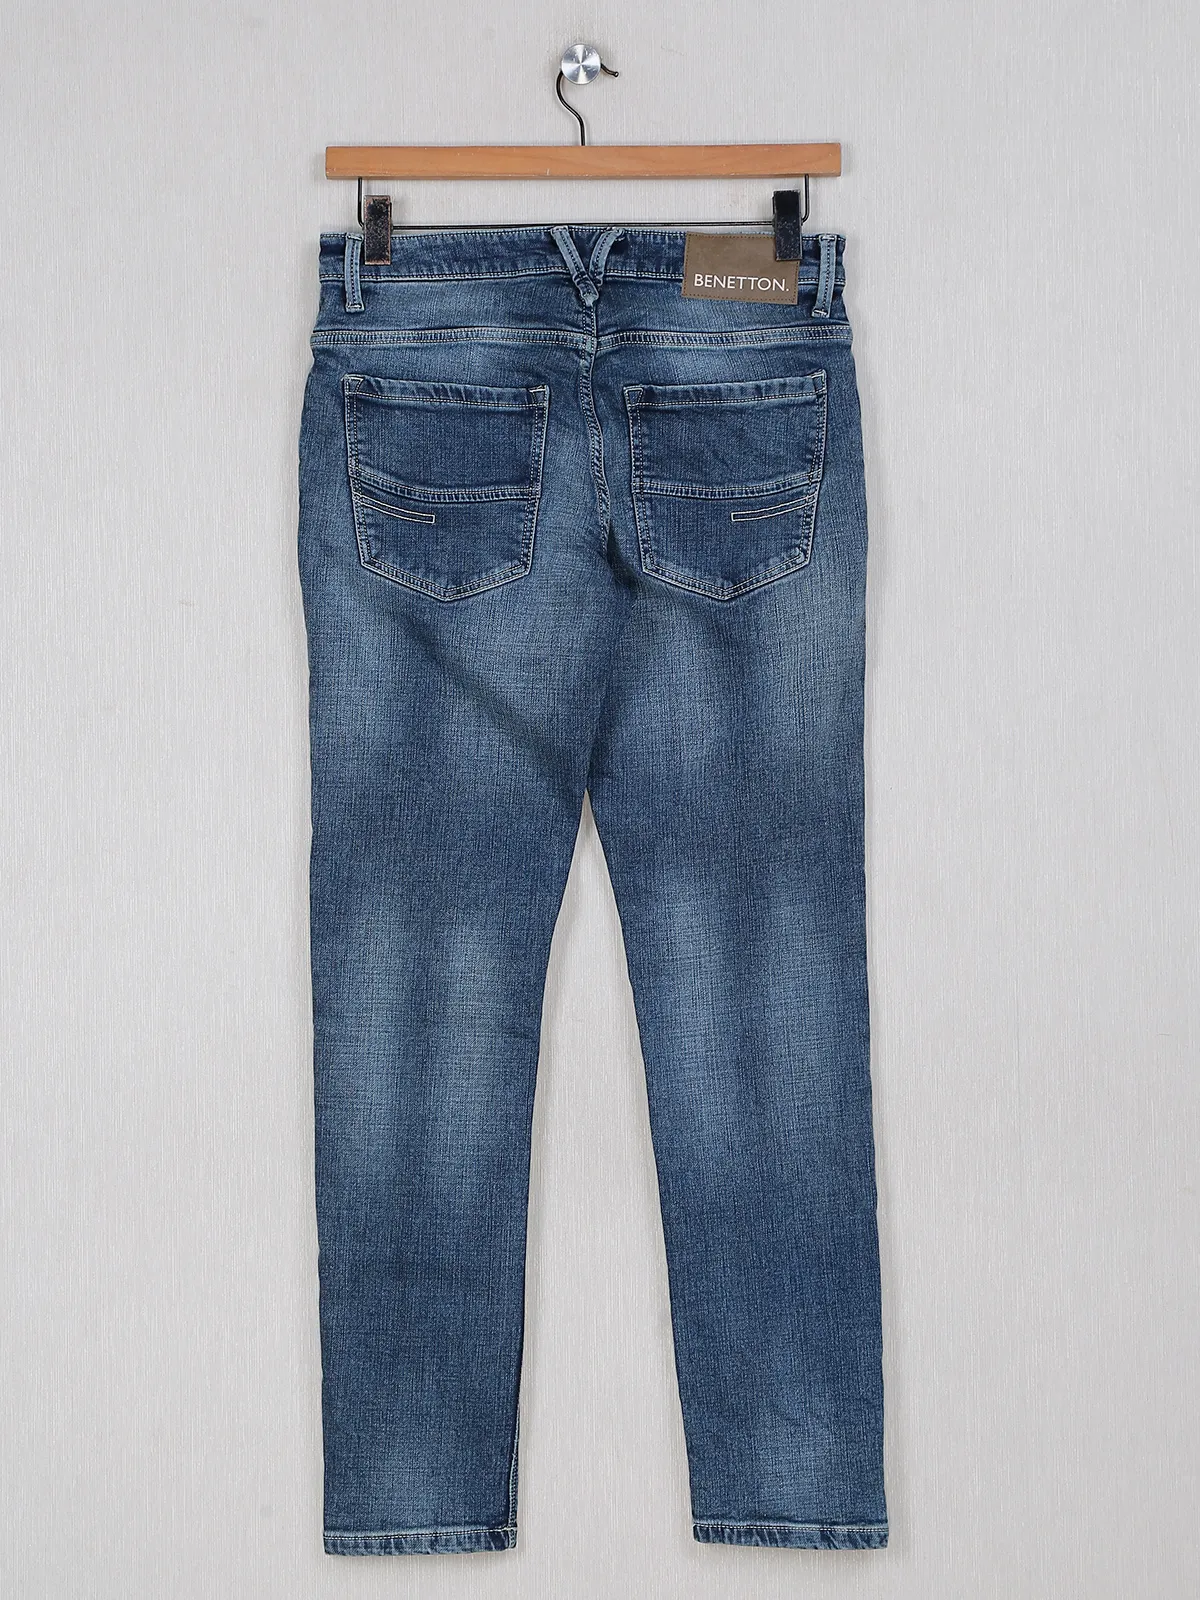 UCB blue denim washed jeans